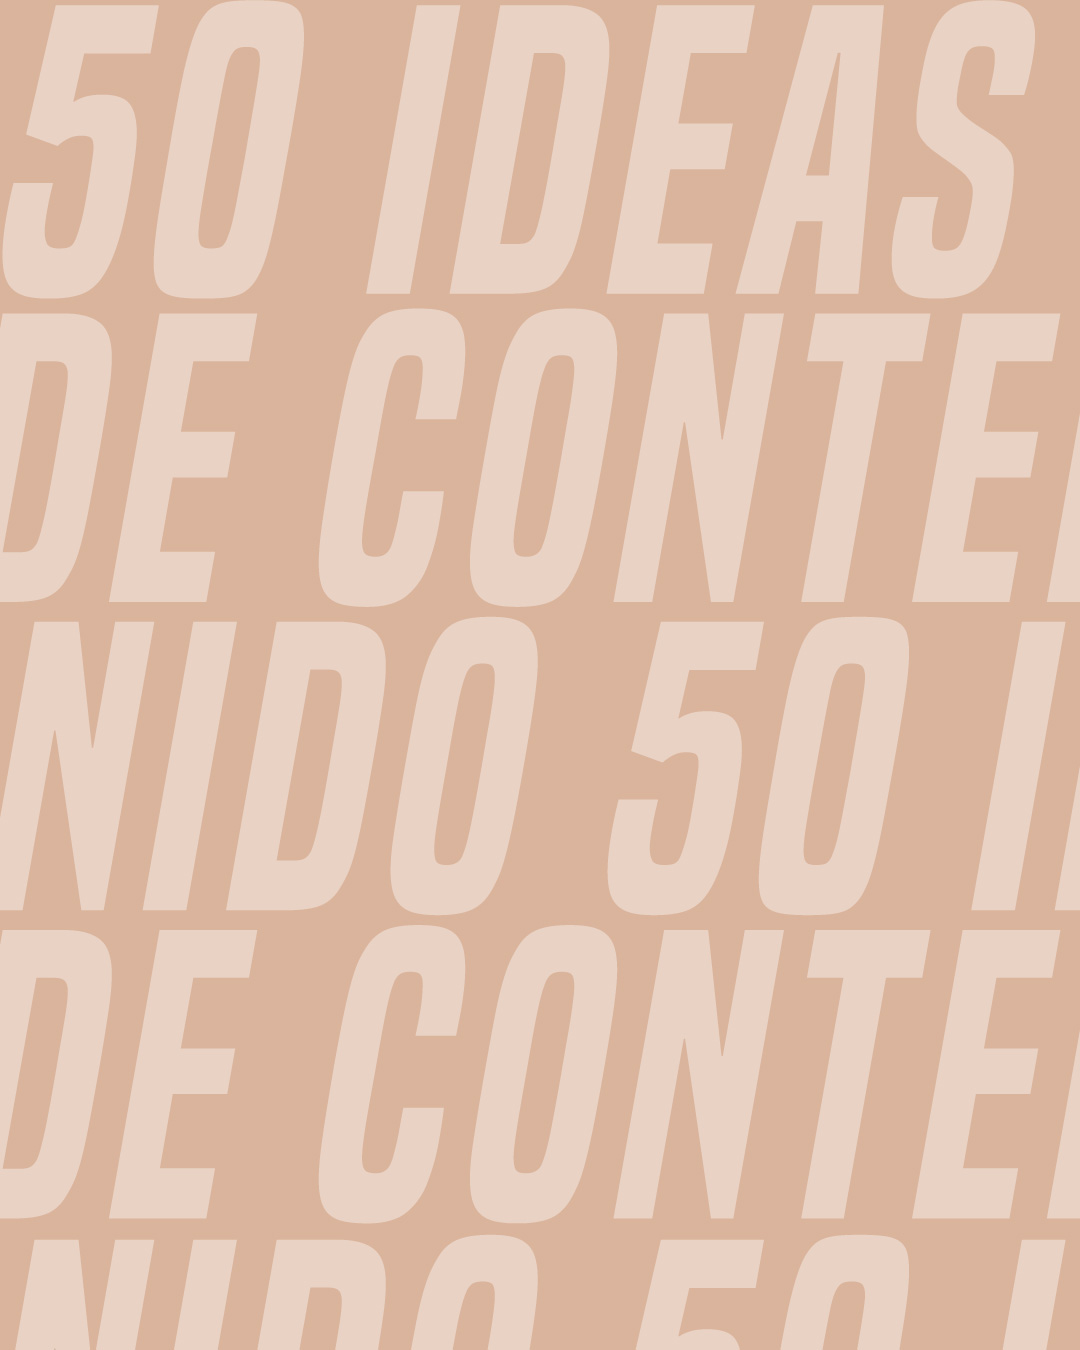 50 ideas de contenido para tu instagram